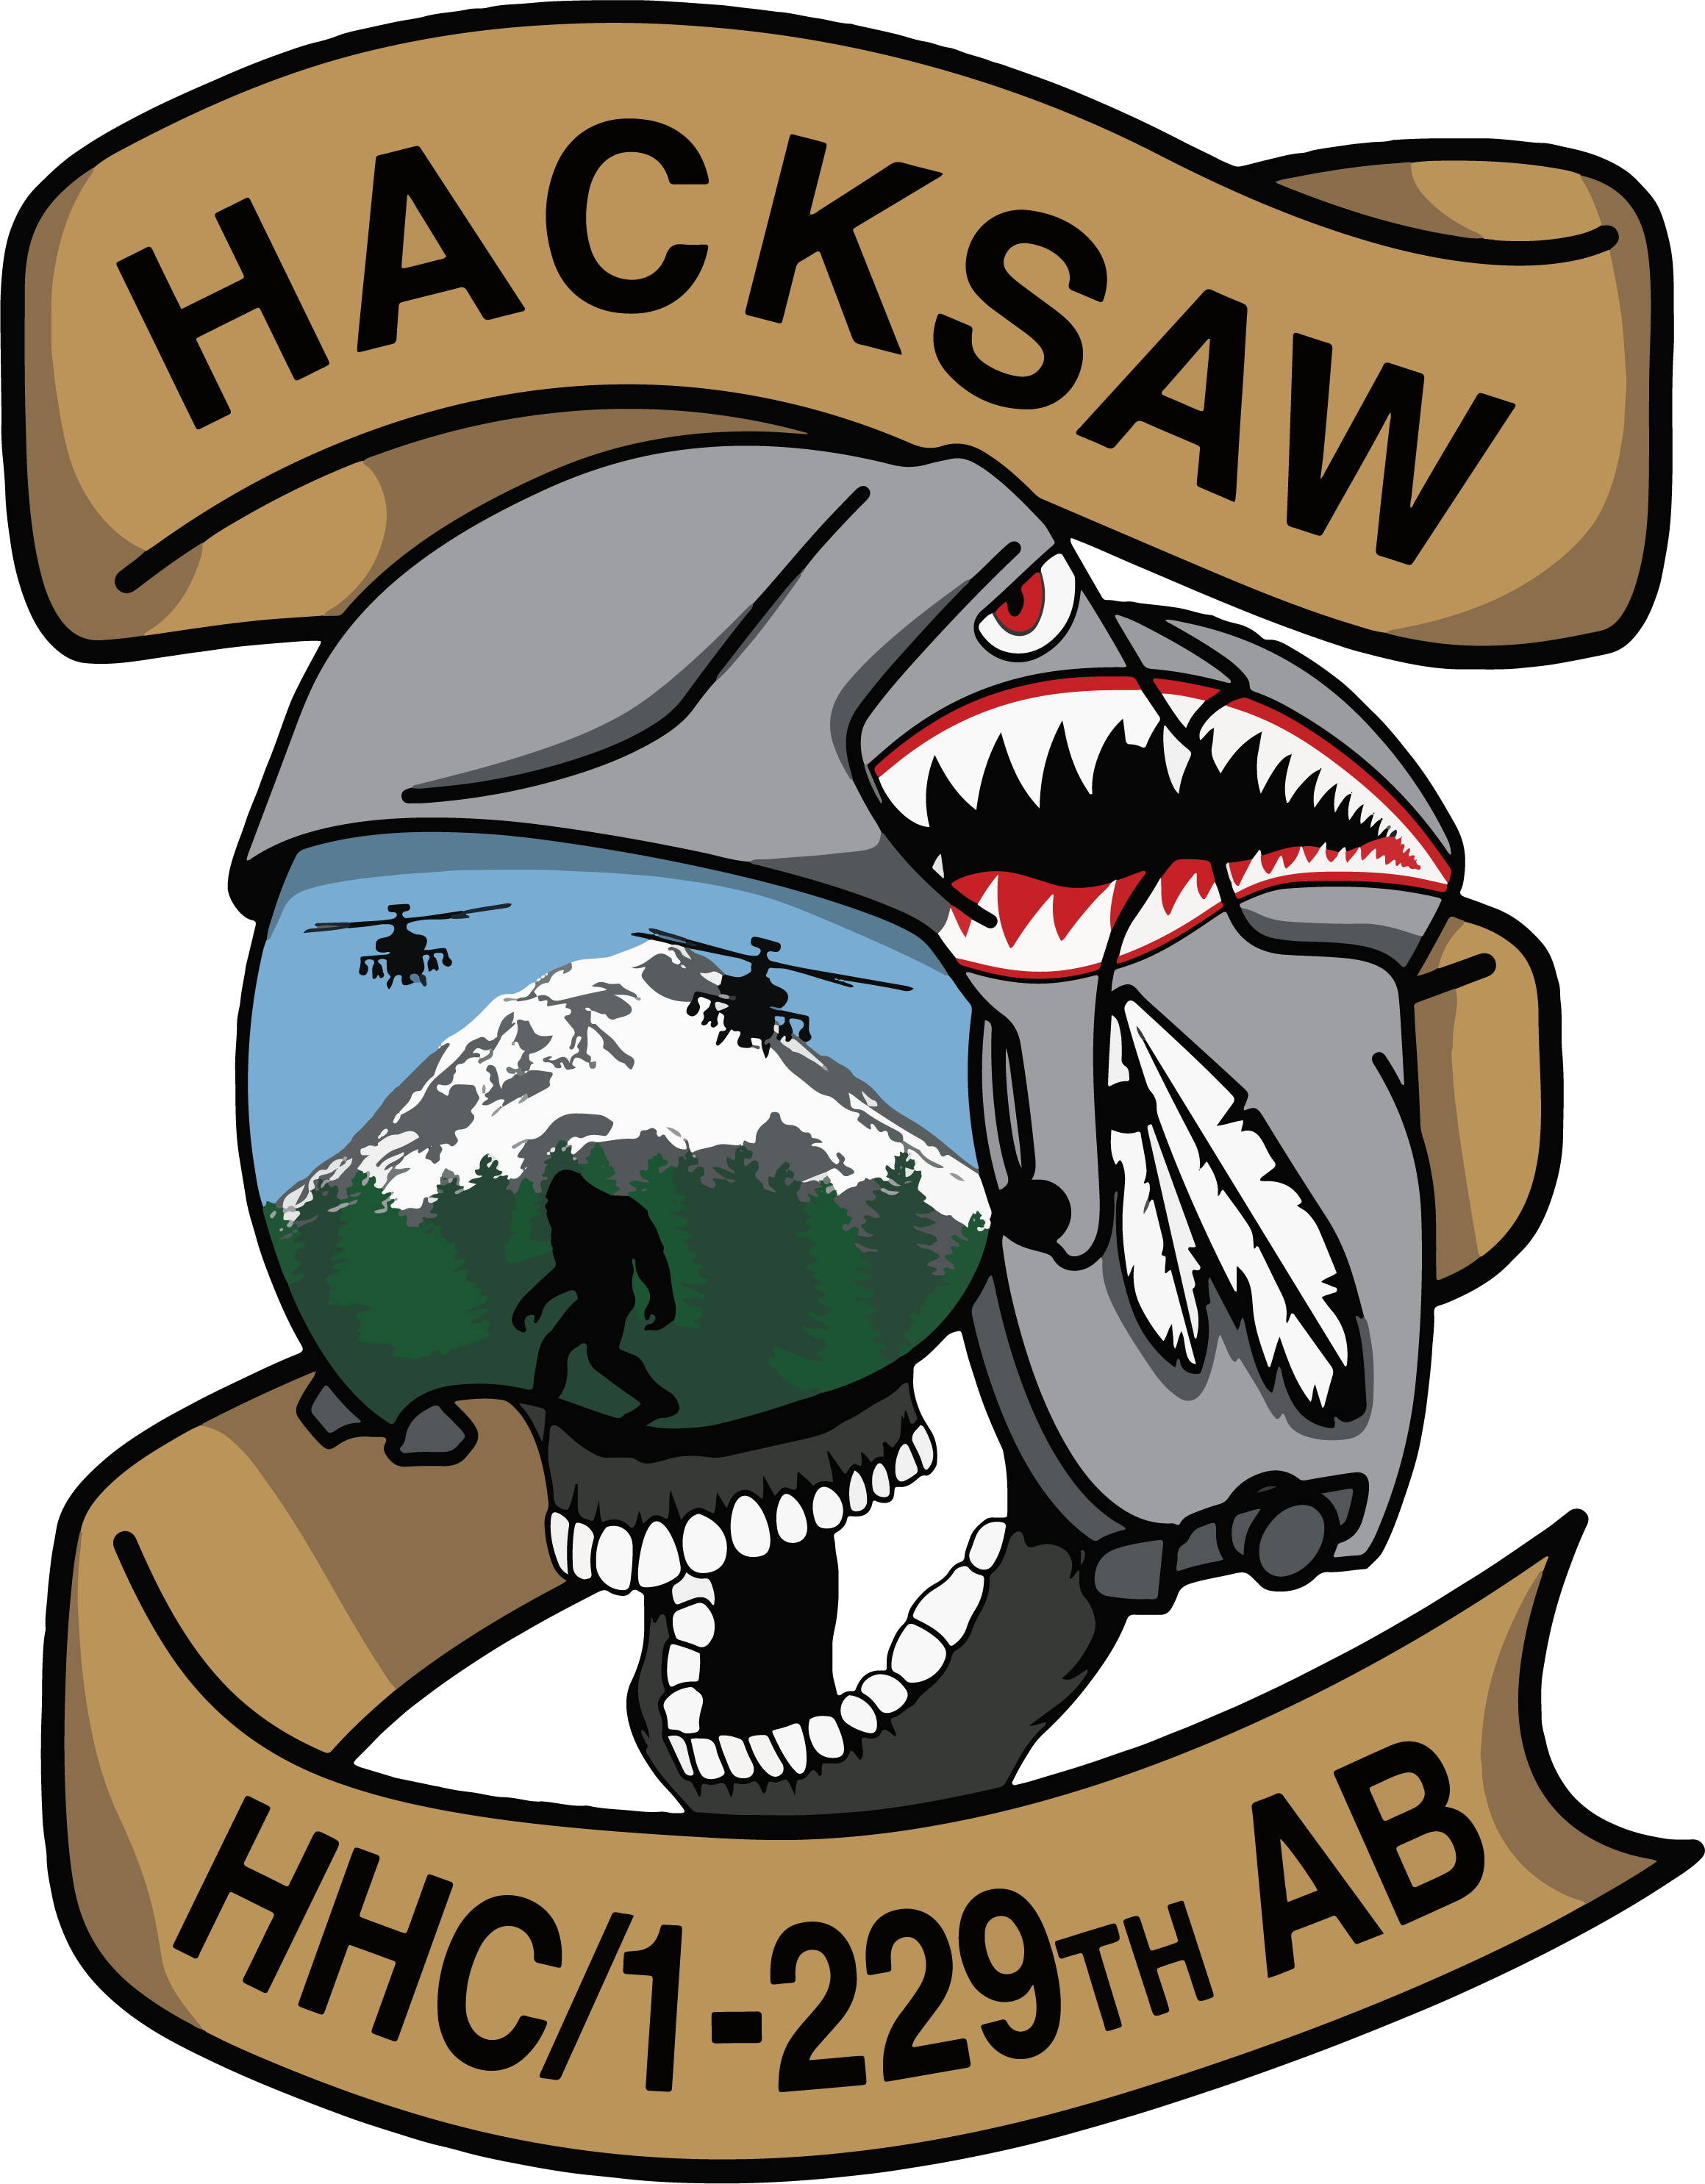 HHC, 1-229 AB "Hacksaw"